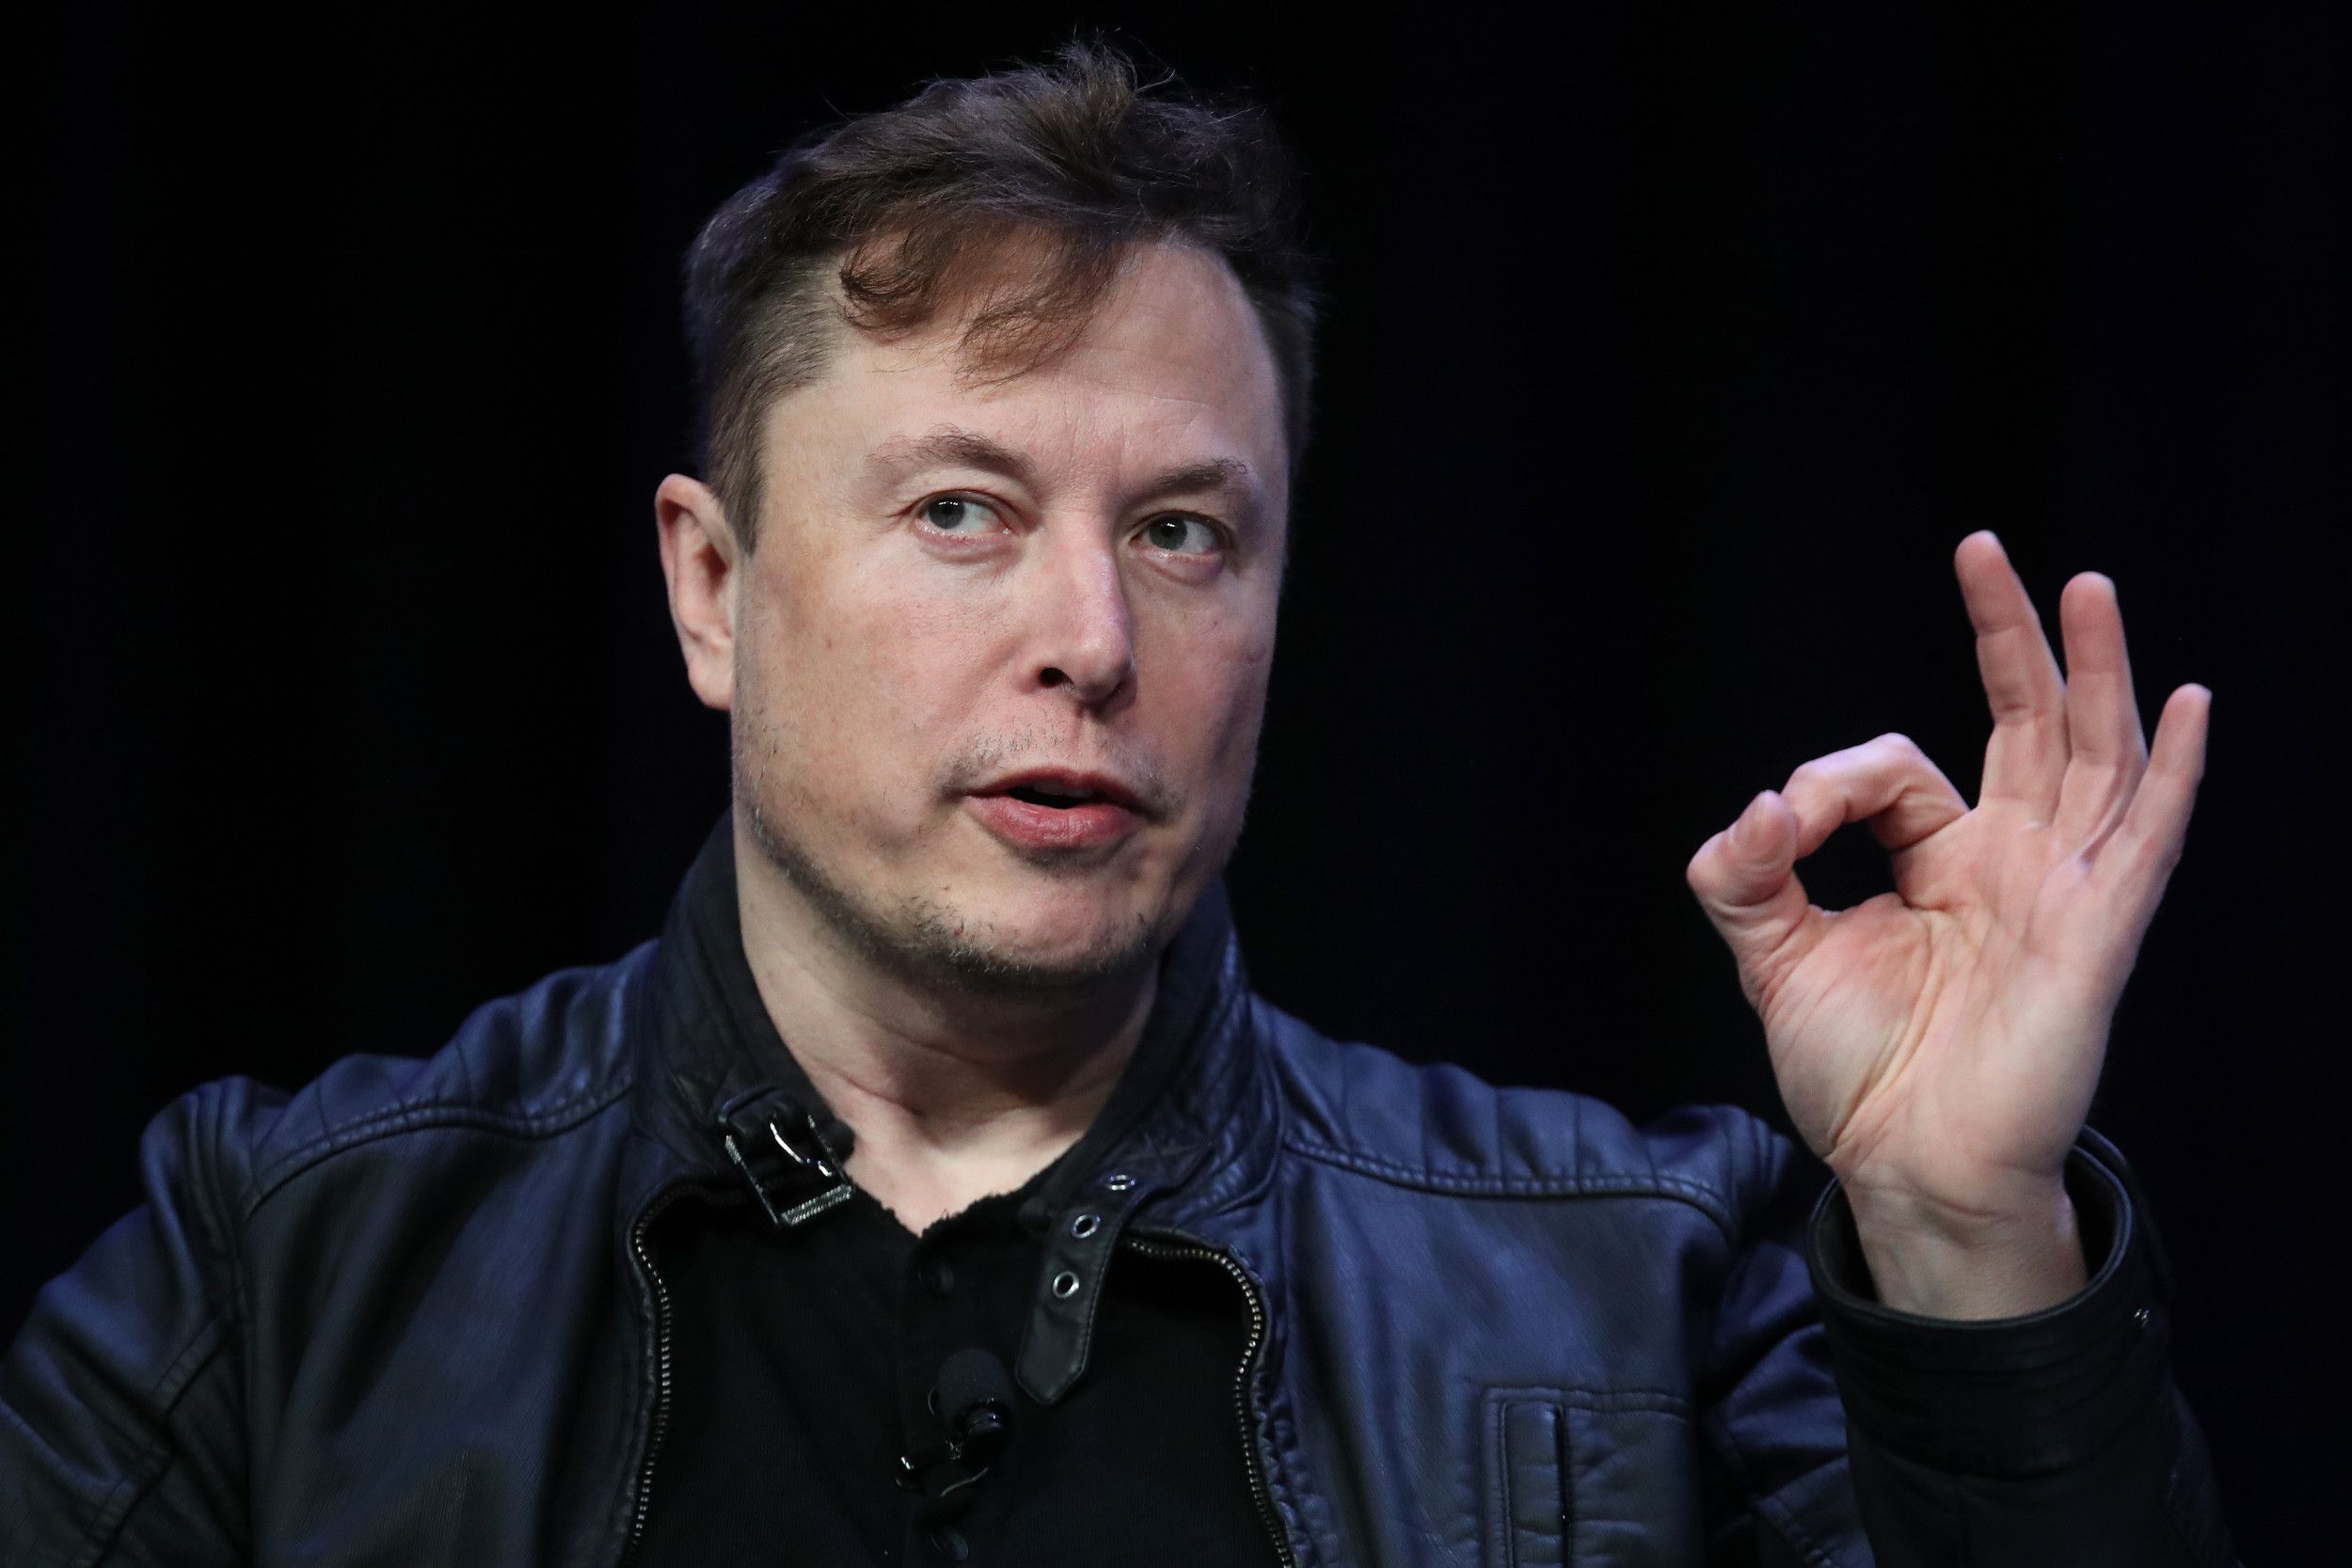 Khảo sát ý kiến các CEO: 79% cho rằng Elon Musk làm xấu hình ảnh Tesla và Twitter